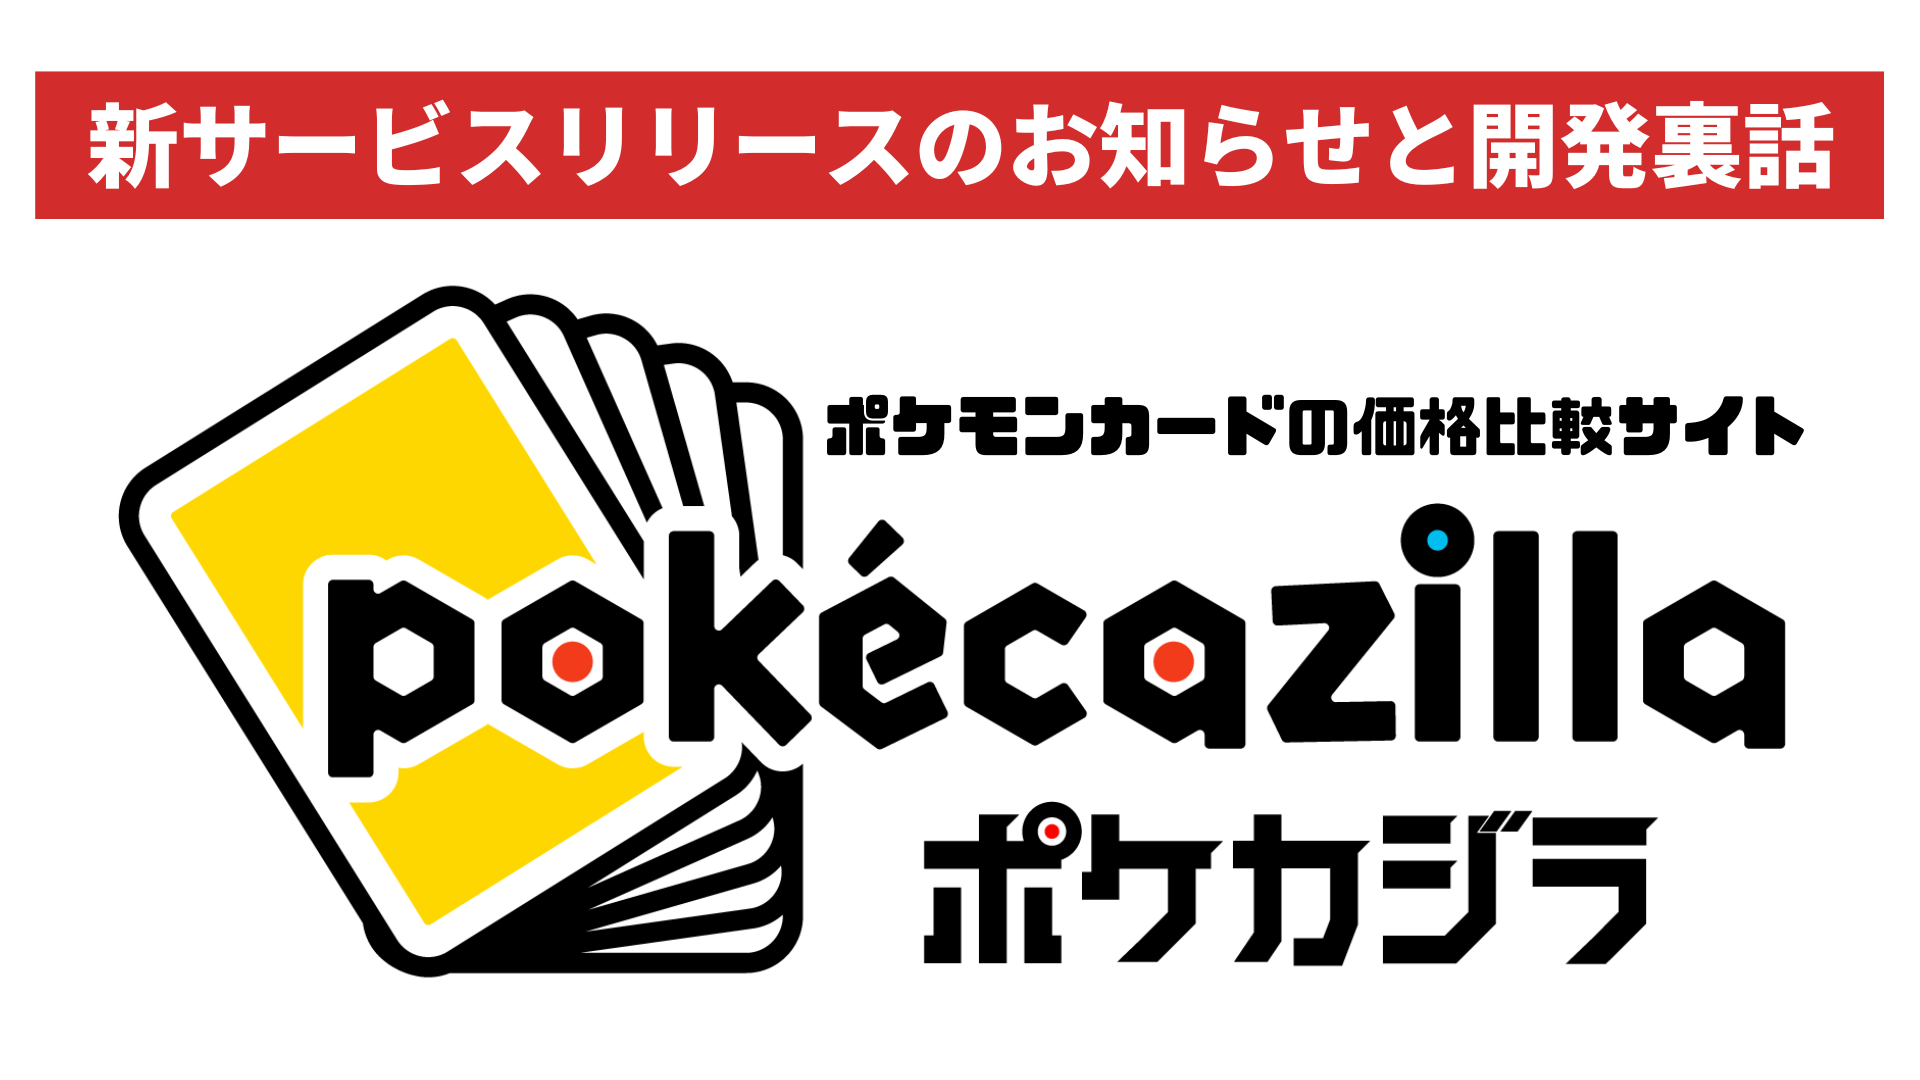 新サービス「pokecazilla」リリースのお知らせと開発裏話